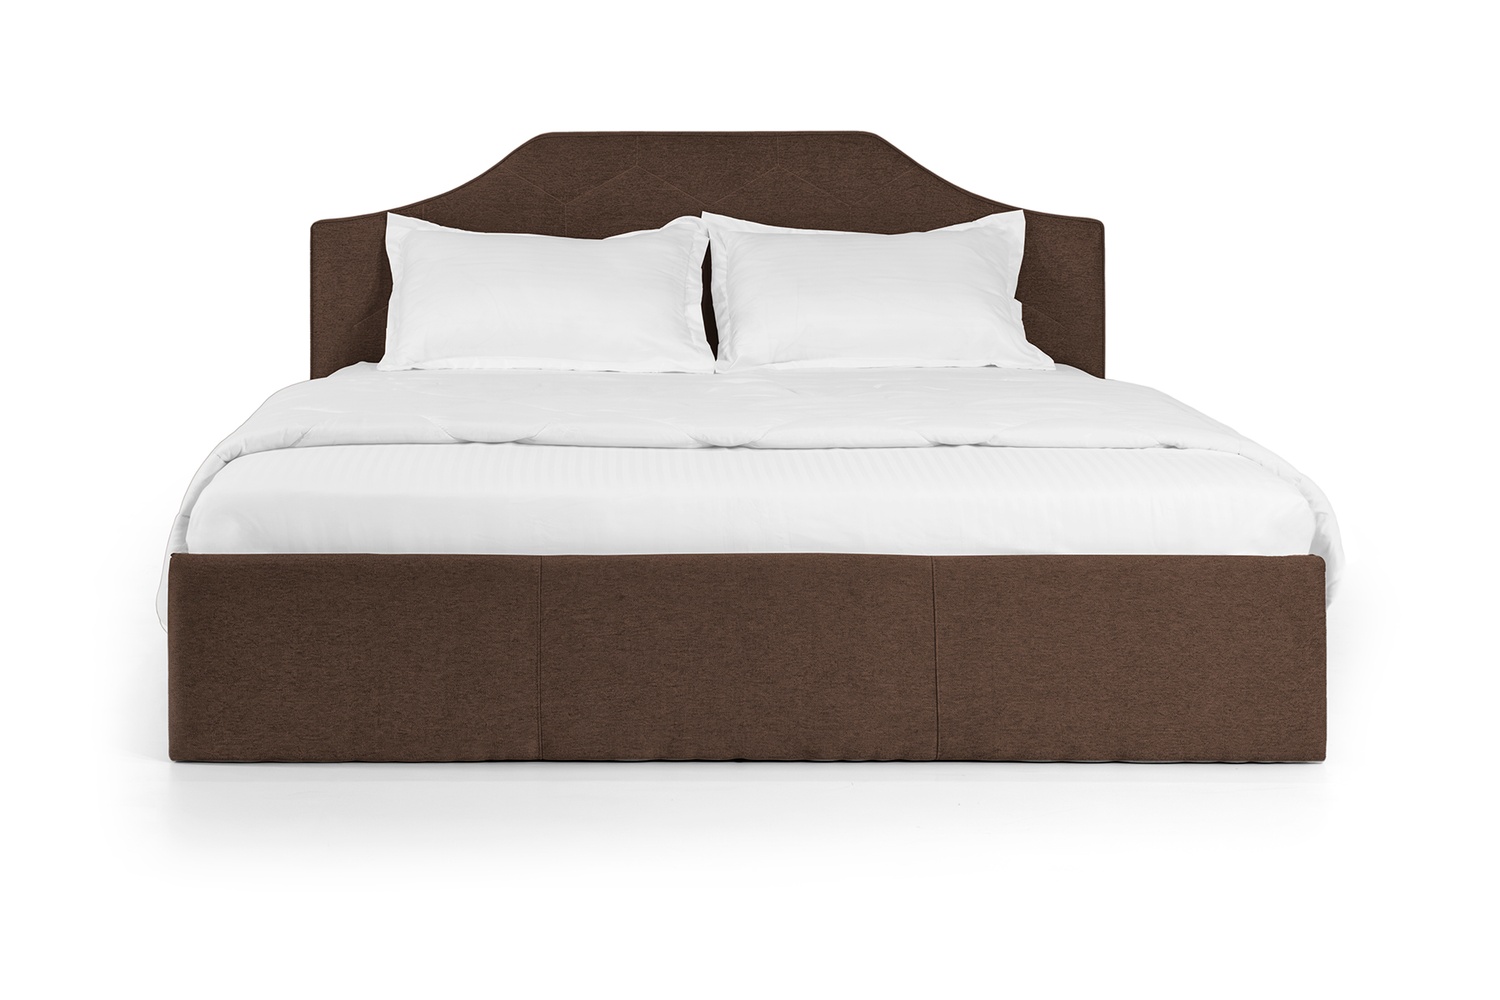 Ліжко Моніка 160х200 (Коричневий, ламелі, матрац, ніша) lmnk160x200kor фото